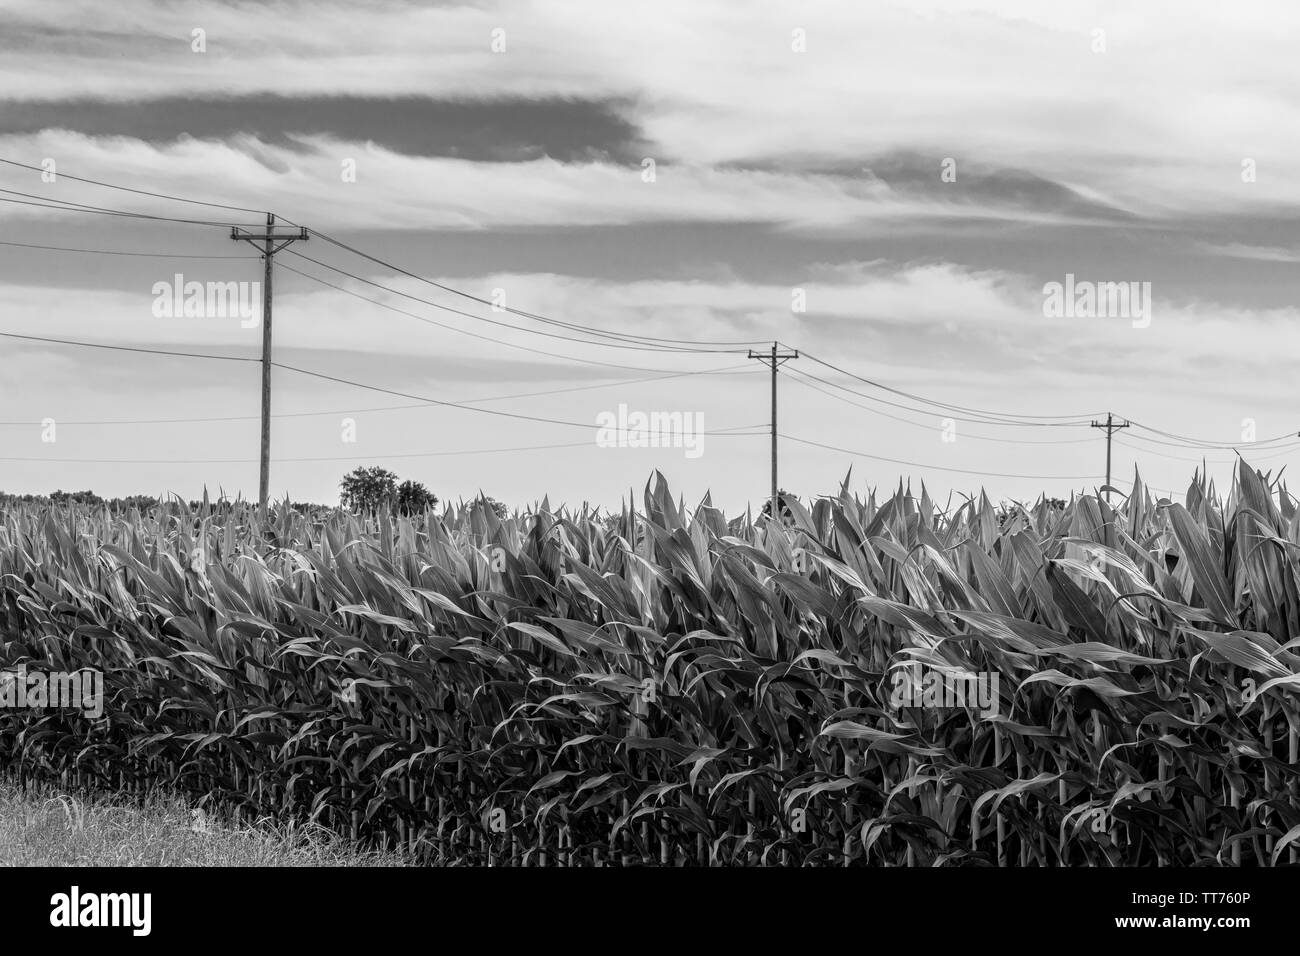 Image en noir et blanc d'un champ de blé en premier plan avec des fils téléphoniques dans l'arrière-plan. Banque D'Images